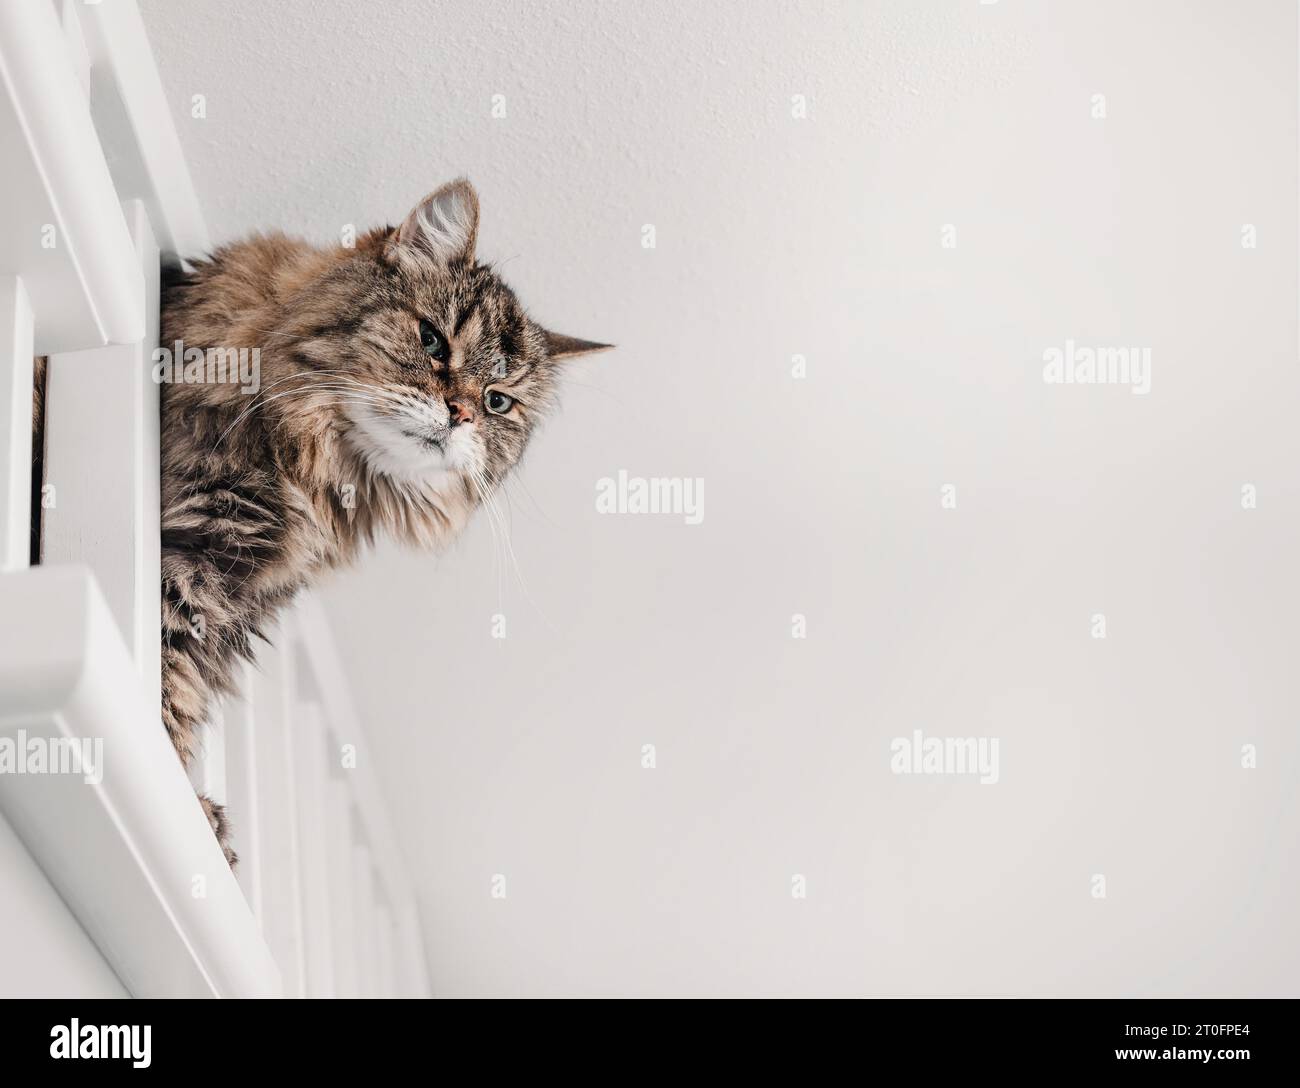 Kuriose Katze, die aus dem Treppengeländer schaut, um Lärm zu untersuchen. Süße flauschige ältere Tabbykatze mit Körper zwischen Geländerpfosten gequetscht. 17 Jahre alt f Stockfoto